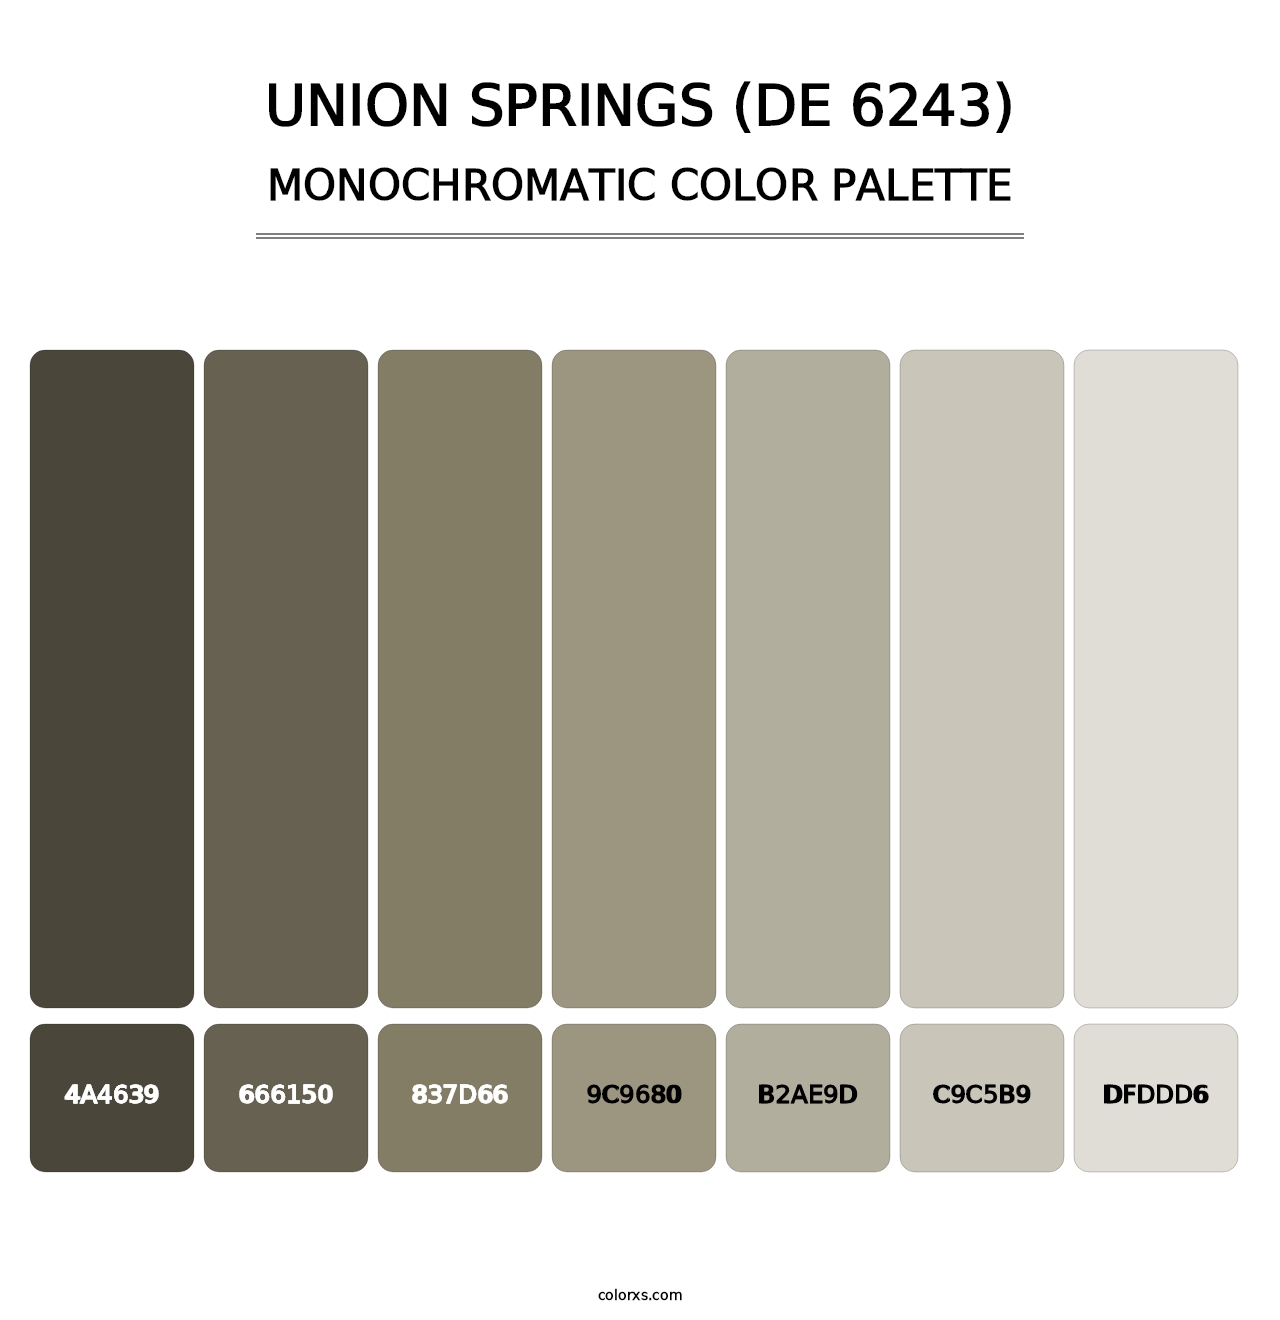 Union Springs (DE 6243) - Monochromatic Color Palette